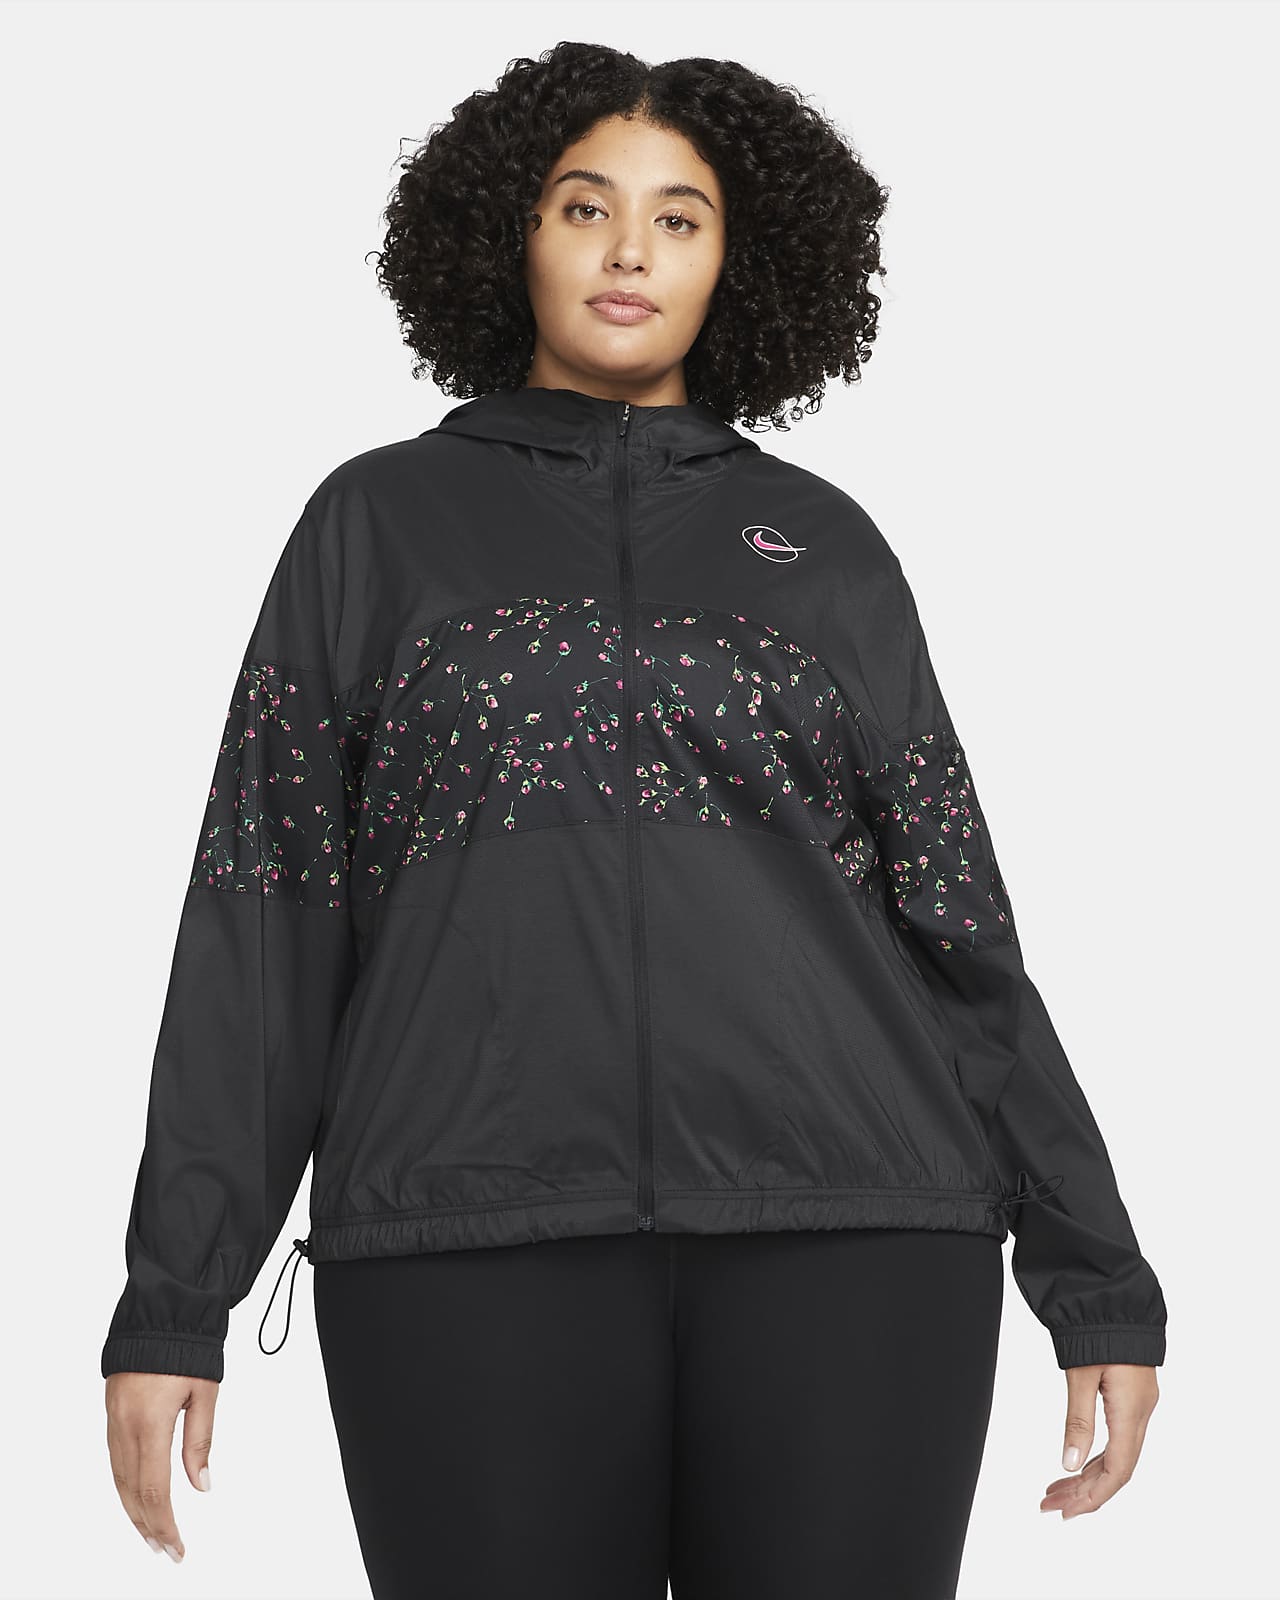 Nike Sportswear Women's Woven Jacket (Plus Size).